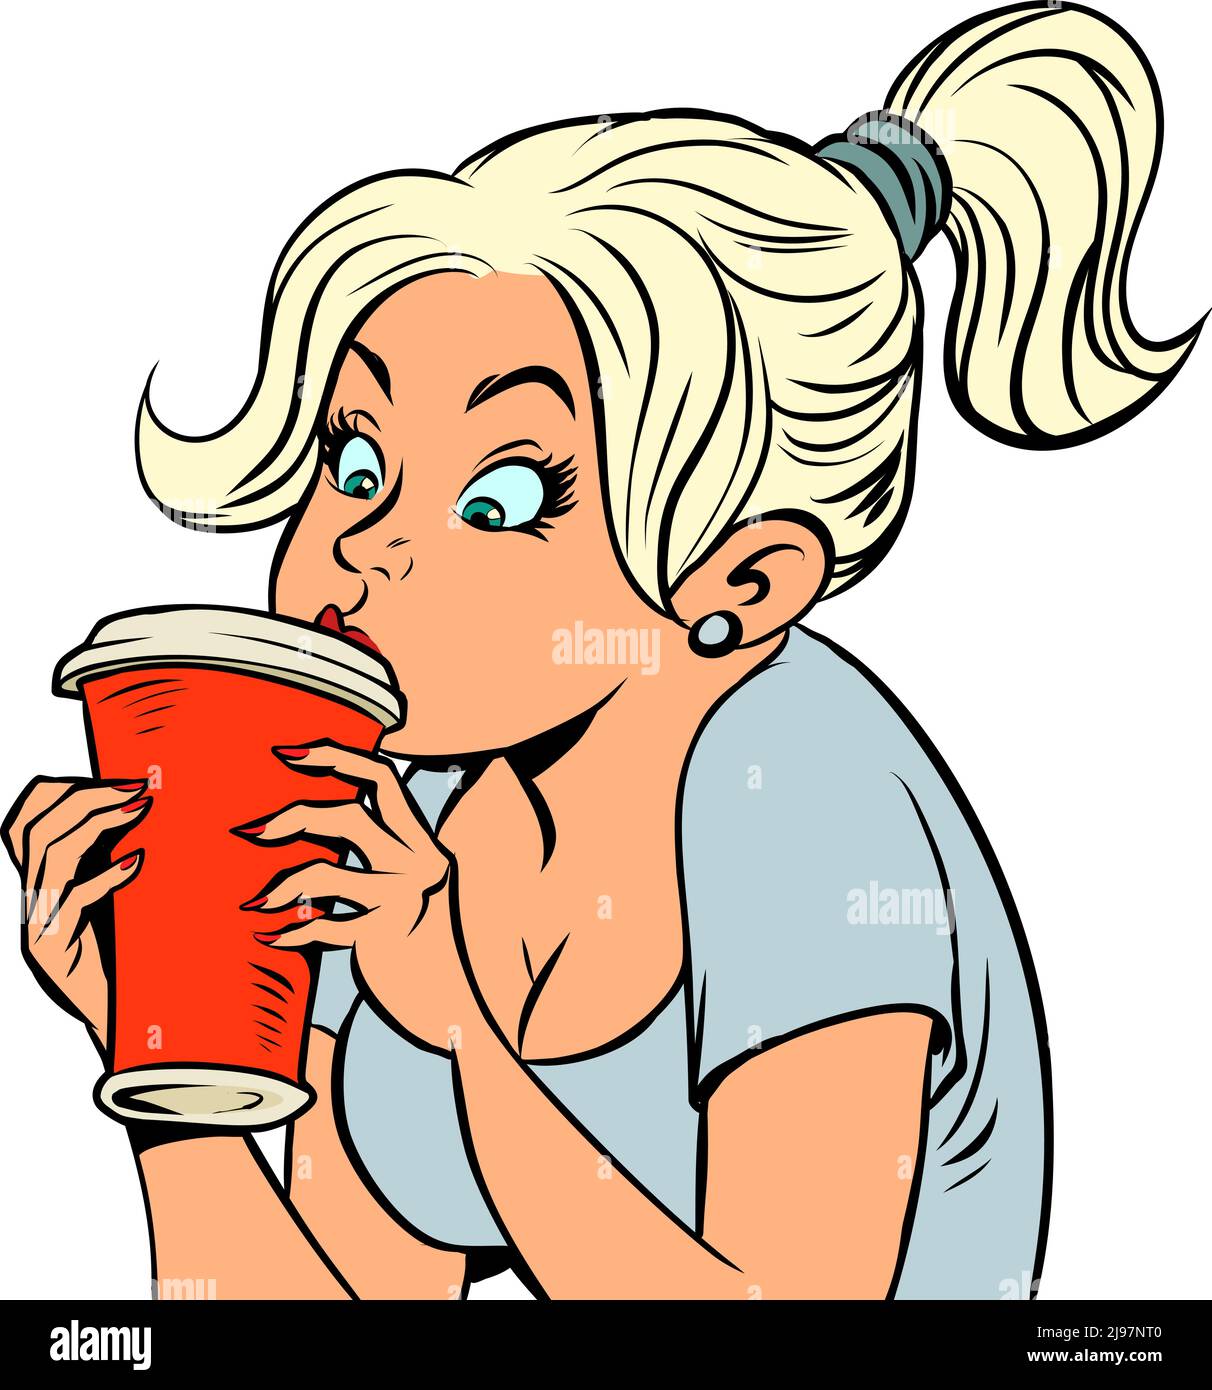 Une belle fille boit une boisson chaude ou froide dans une tasse de papier. Vivacité du matin Illustration de Vecteur